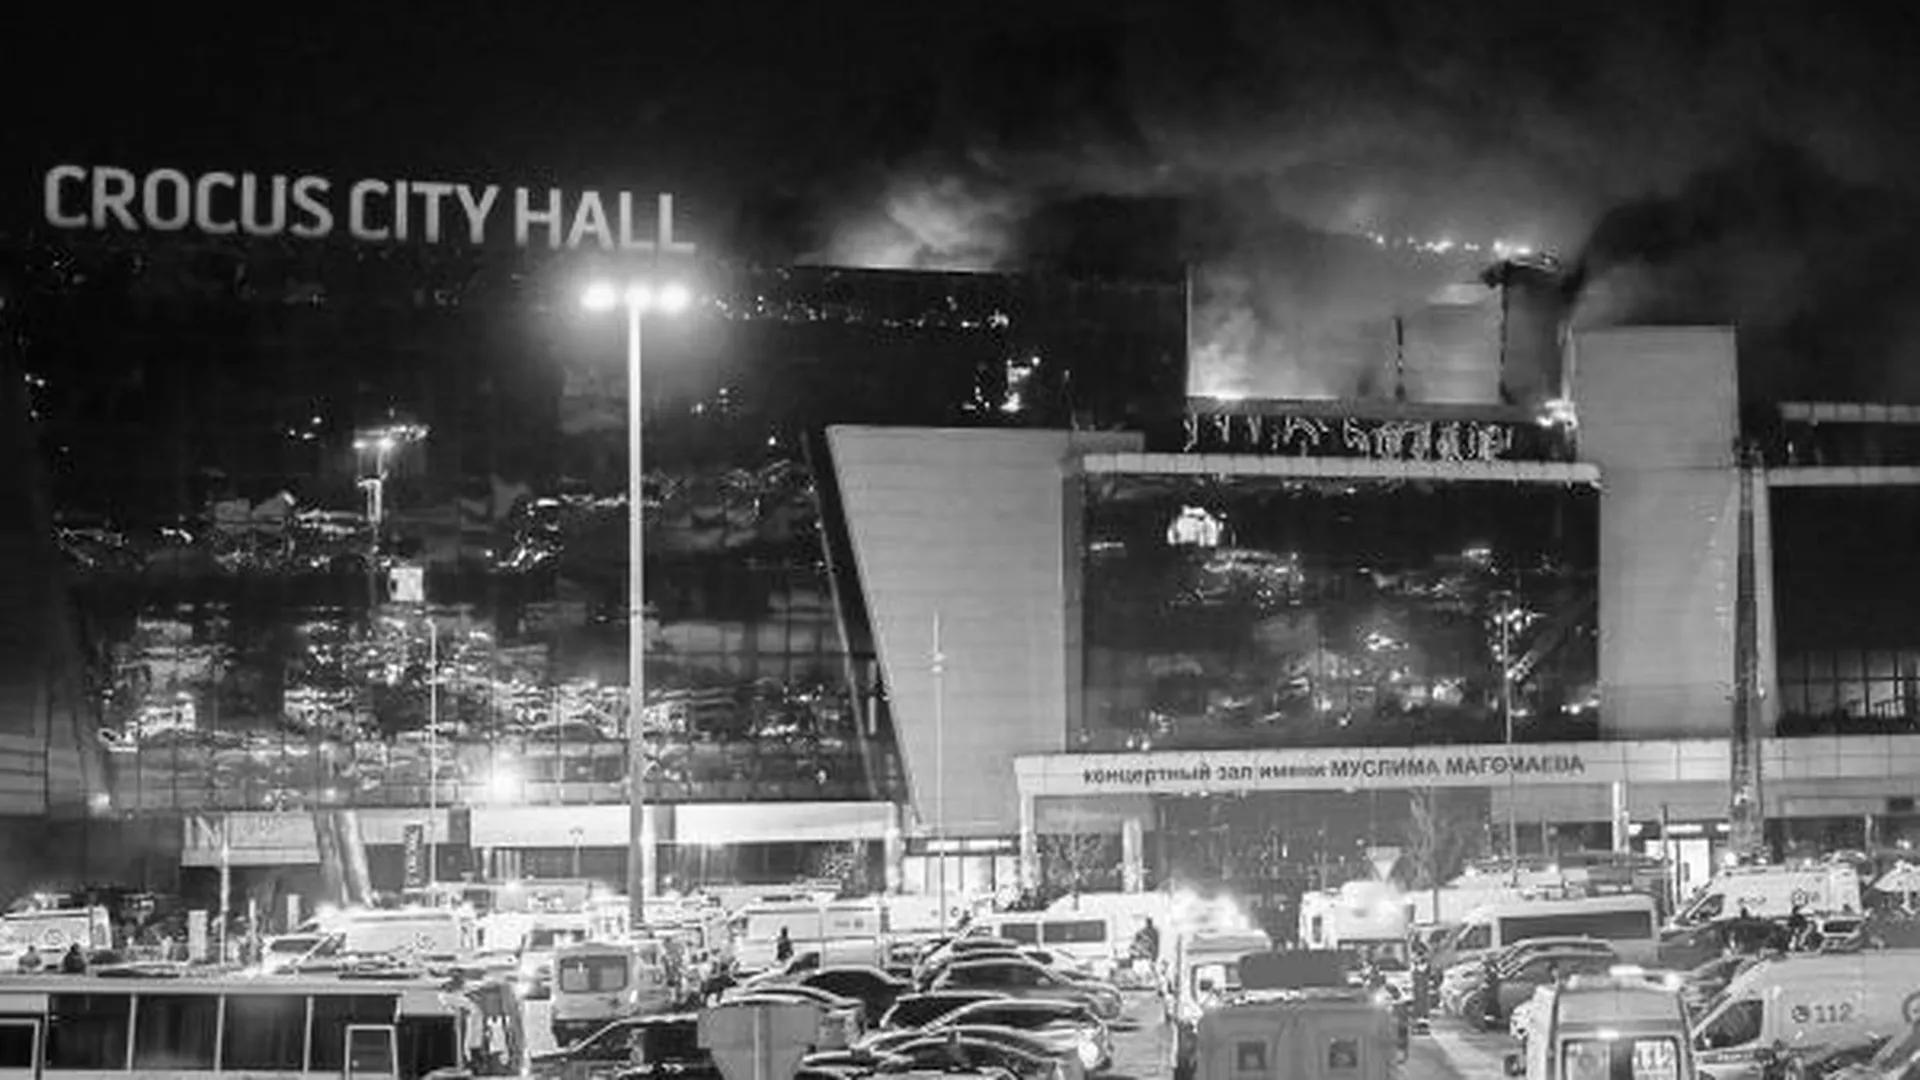 Теракт в Crocus City Hall собрал общество в могучий кулак — Симоньян